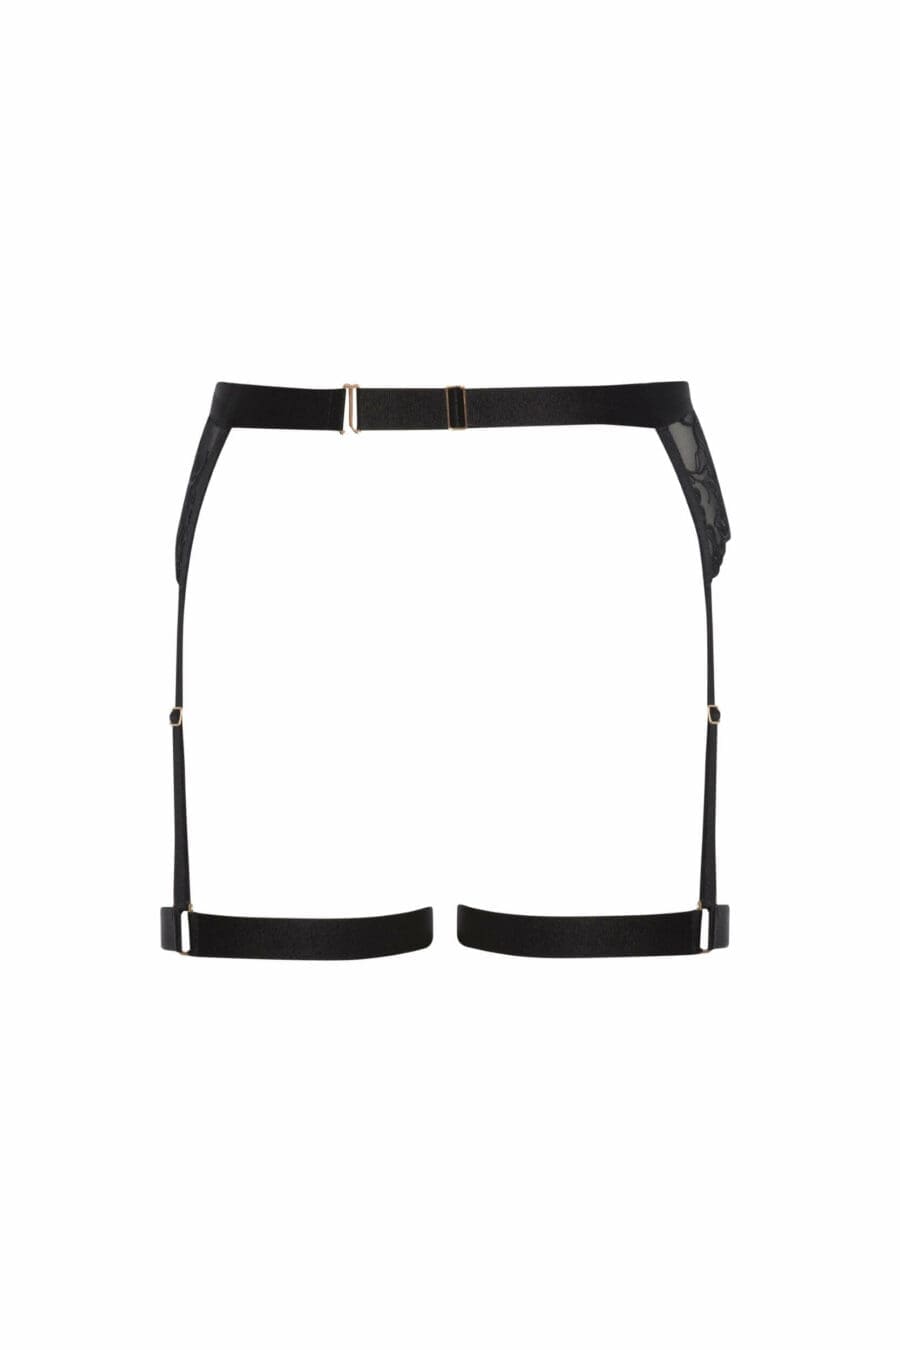 Bracli Vienna Harness Garter Suspender Belt